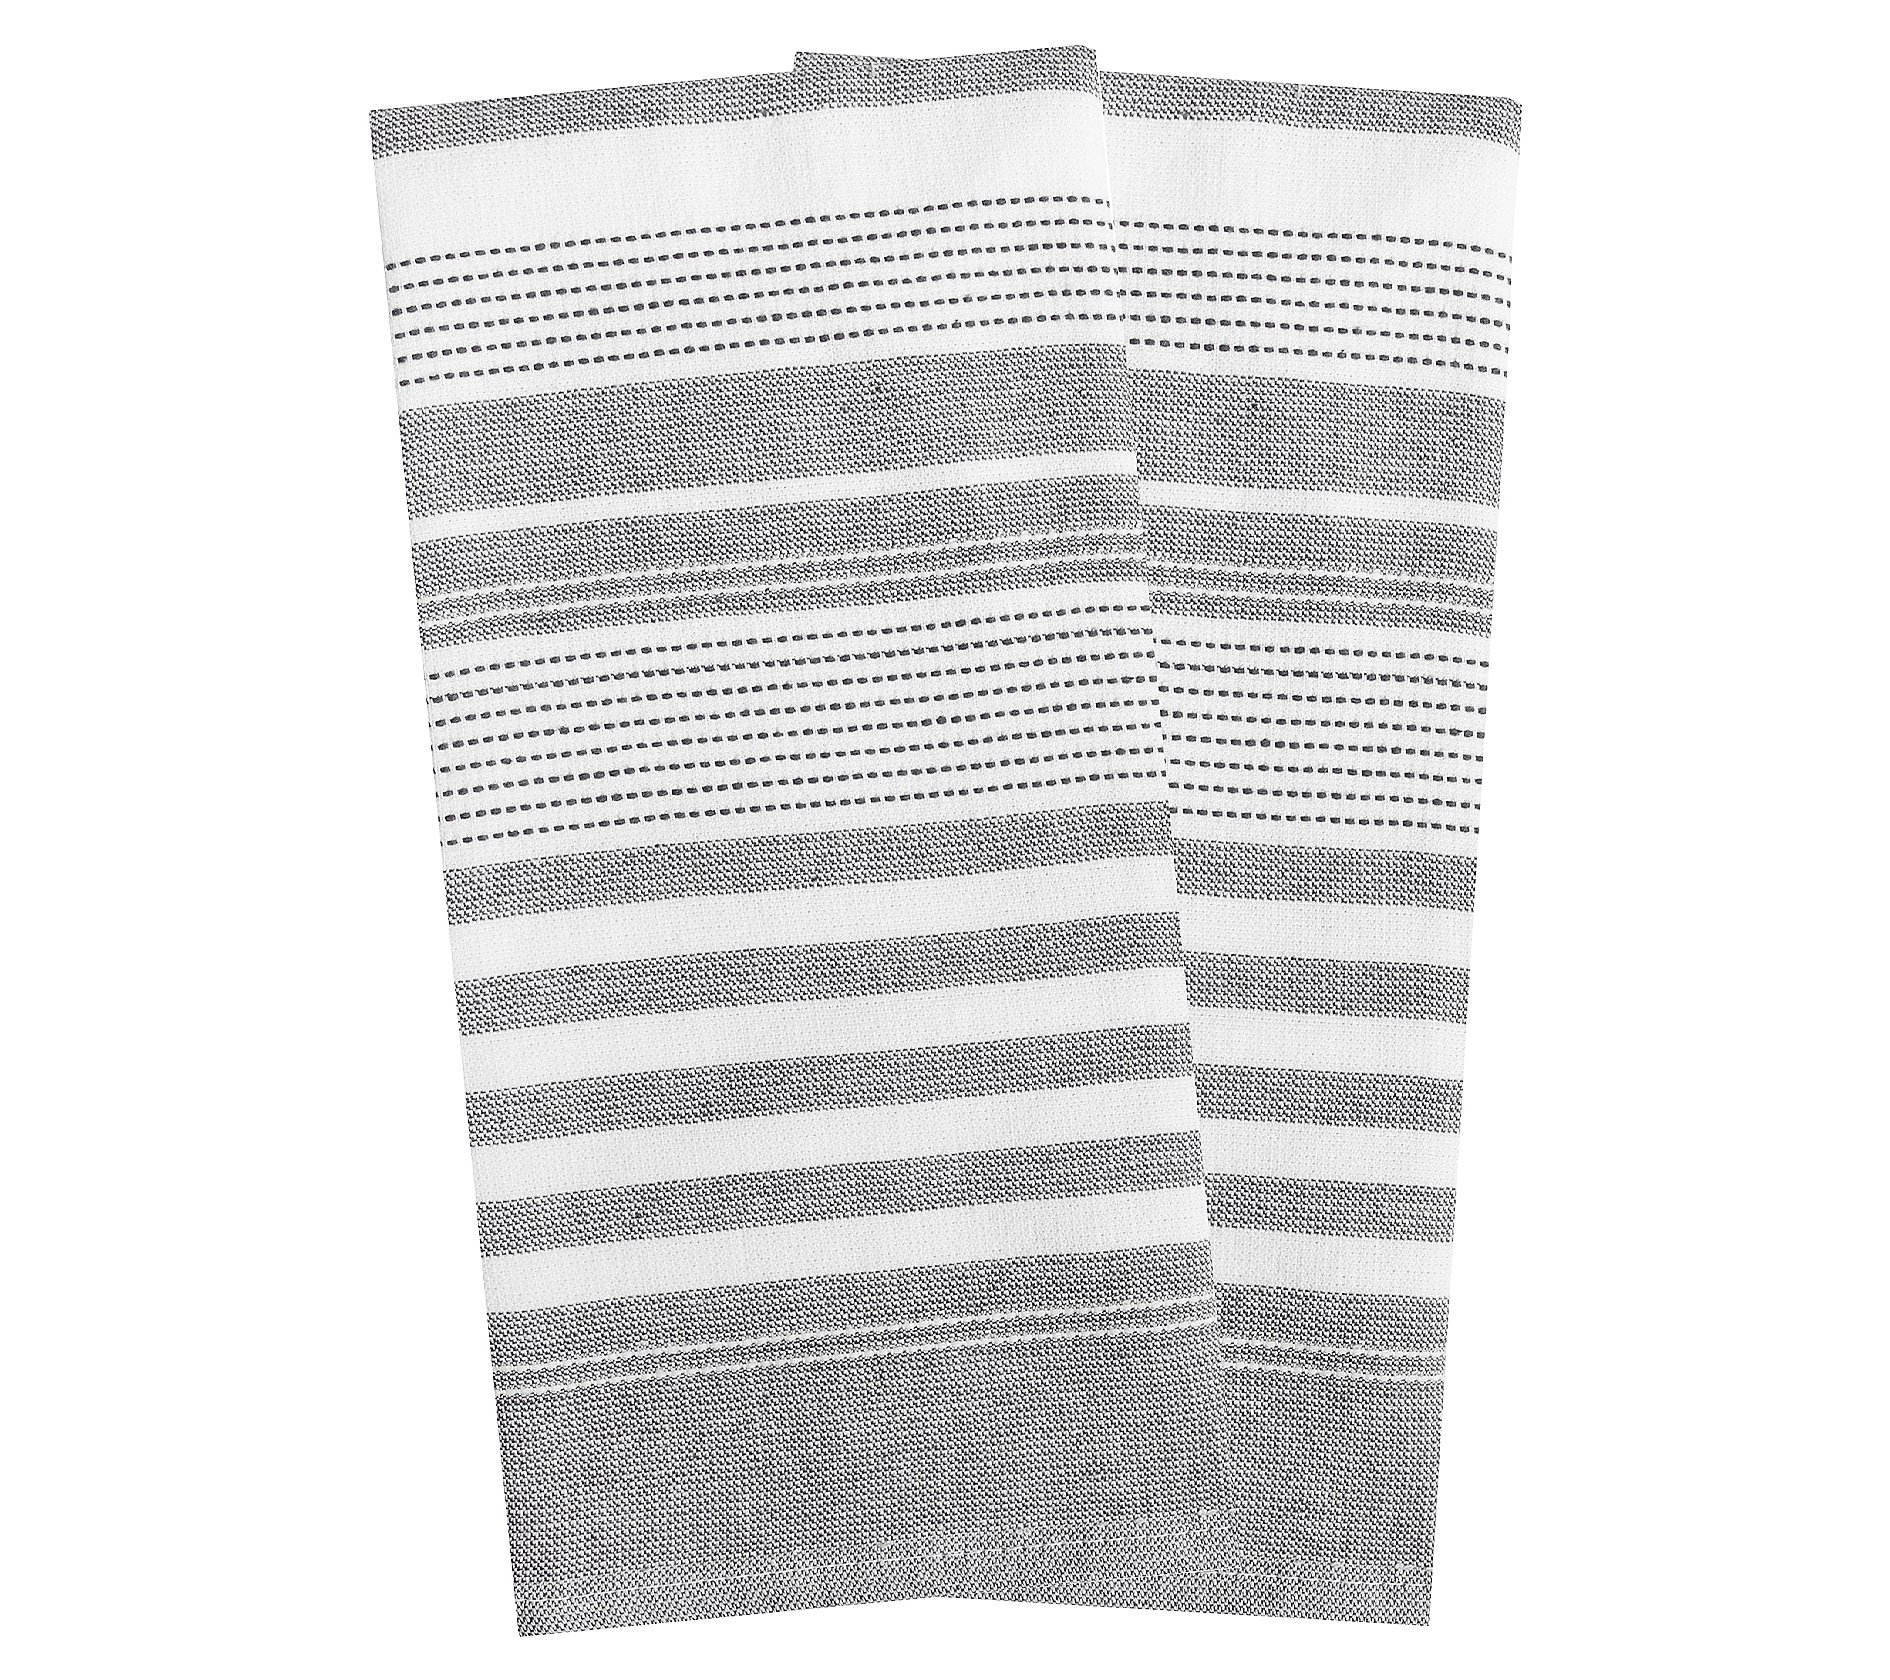 T-fal 2-Piece Dual Terry Stripe Kitchen Towel S et